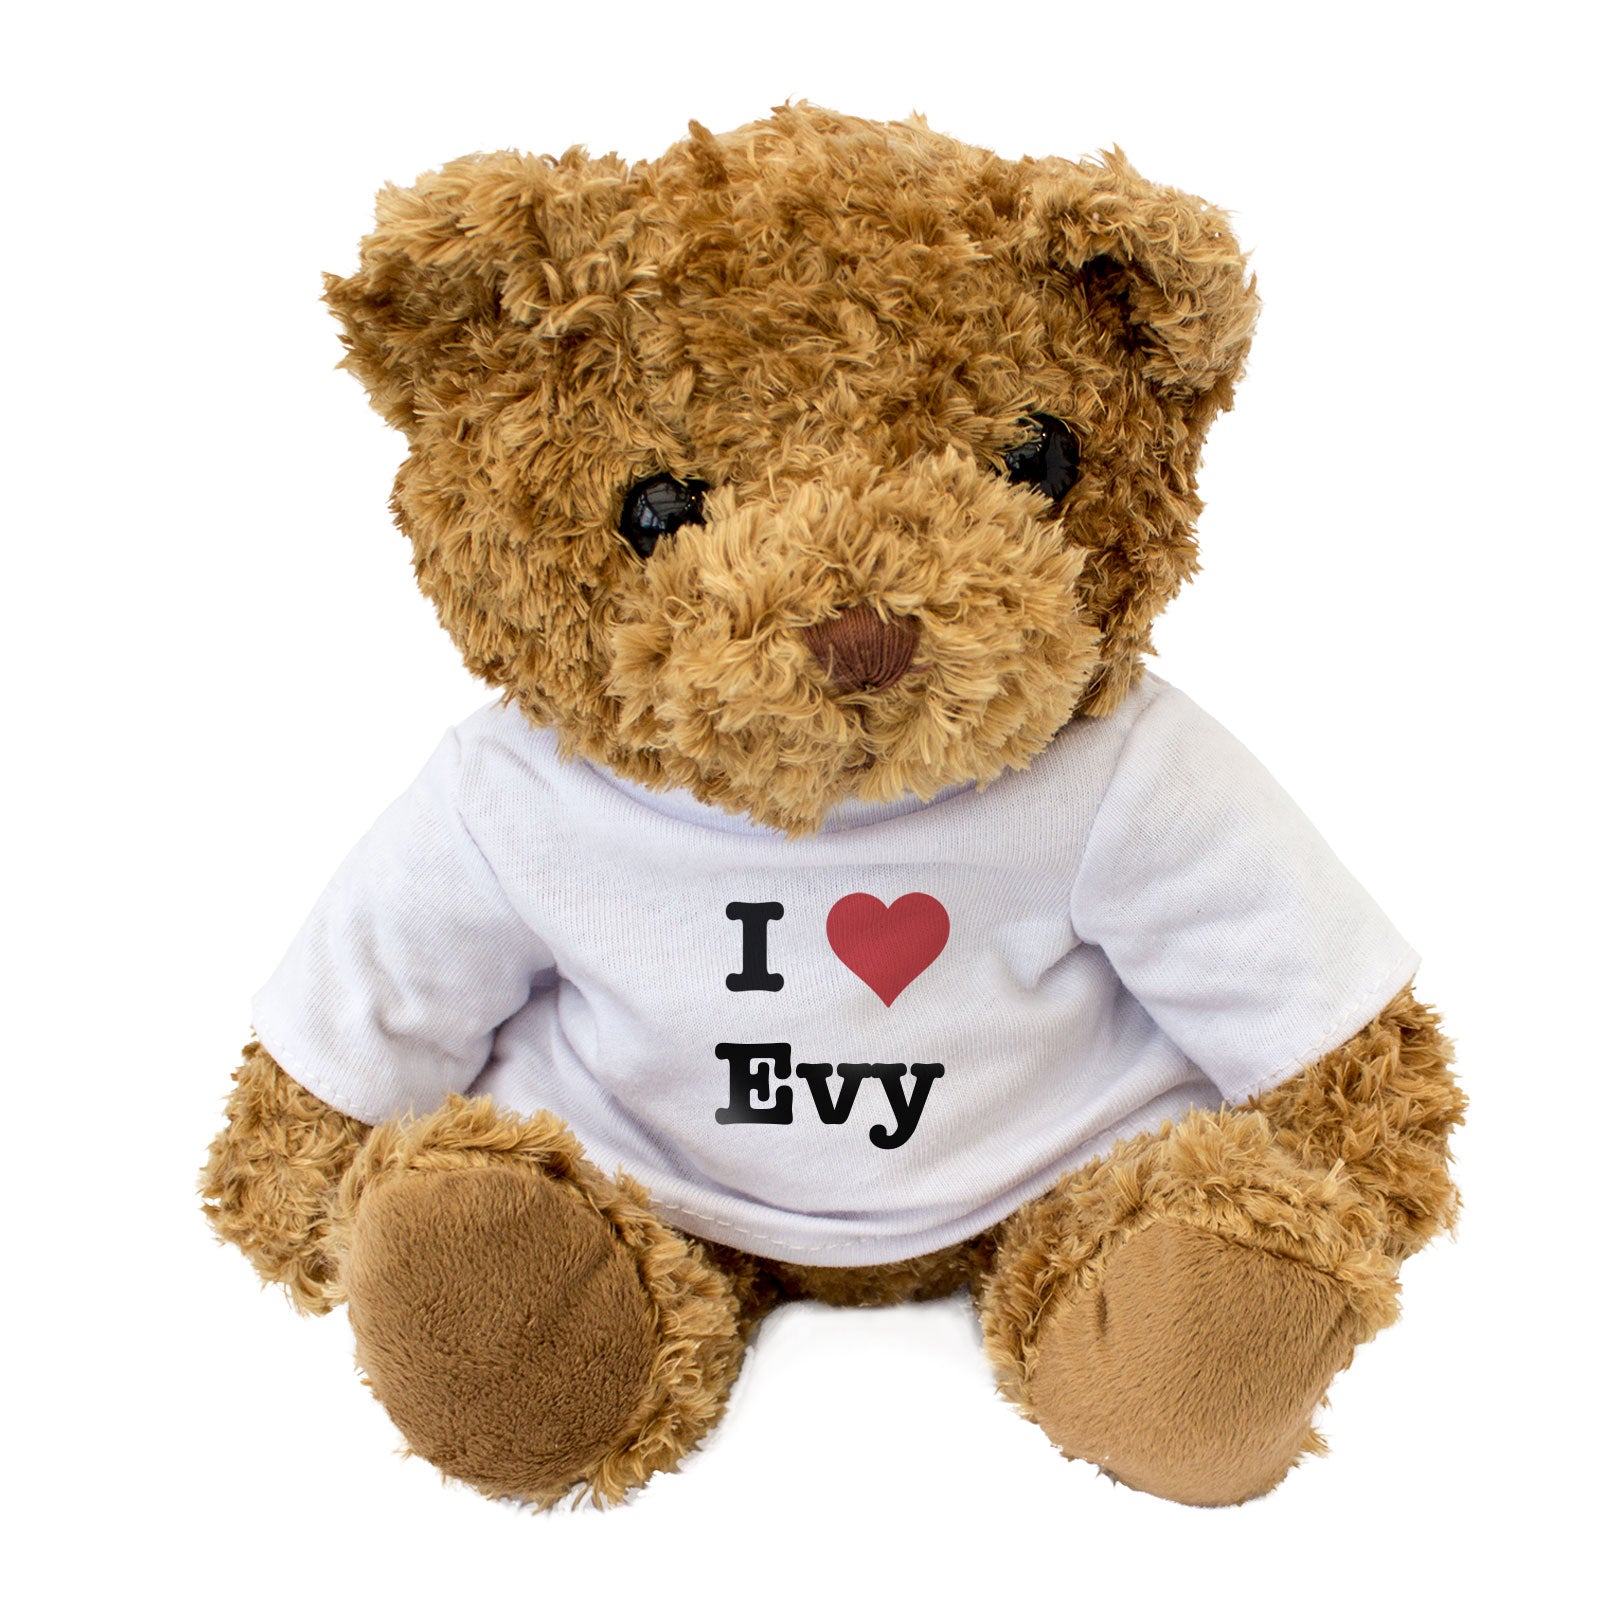 I Love Evy - Teddy Bear